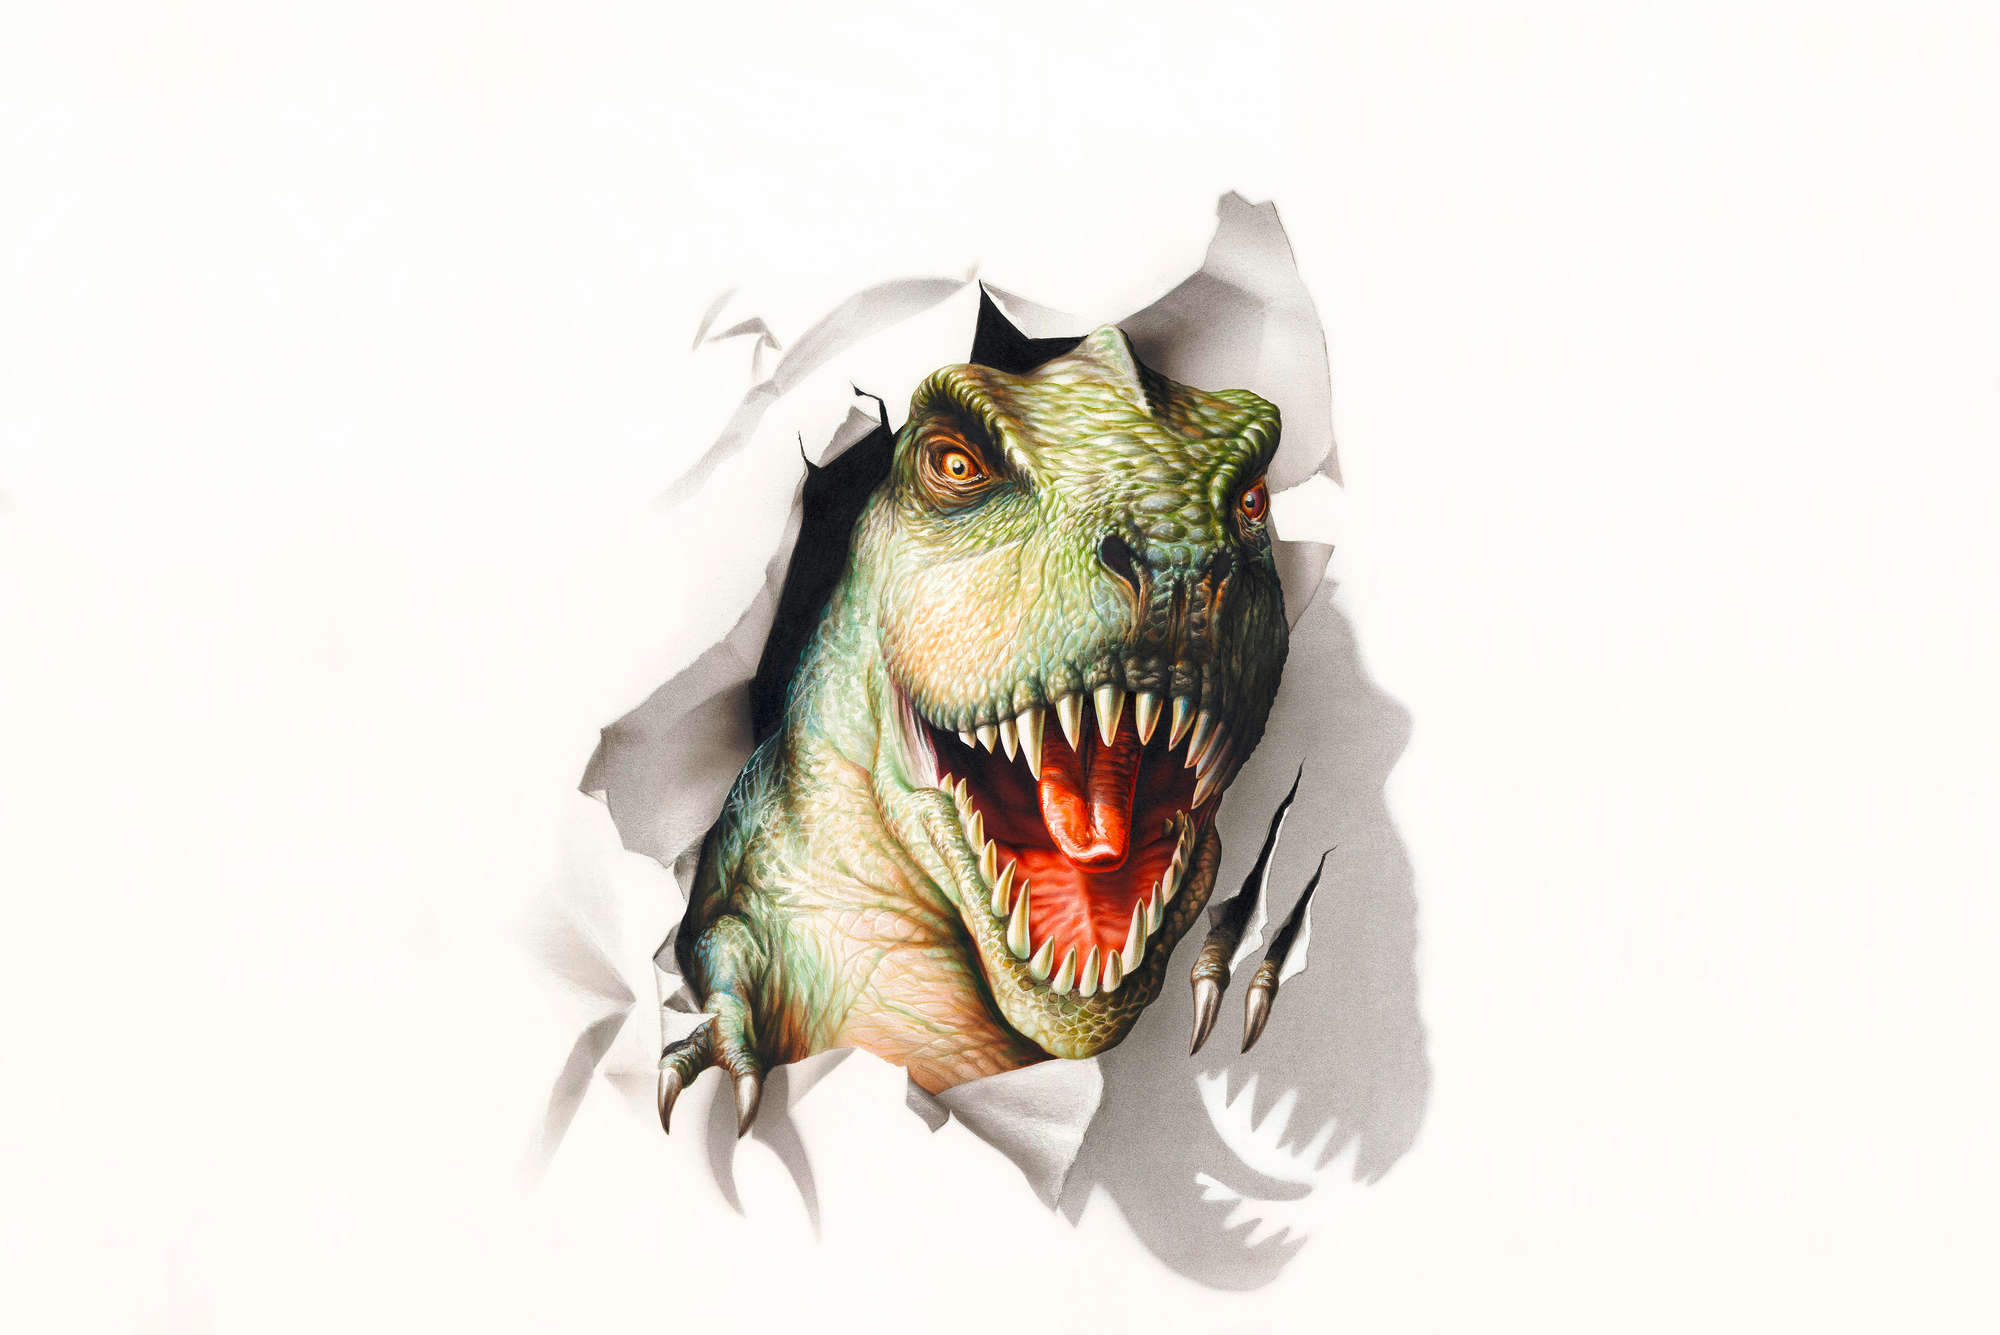             Papel pintado infantil Cabeza de dinosaurio sobre vellón liso de primera calidad
        